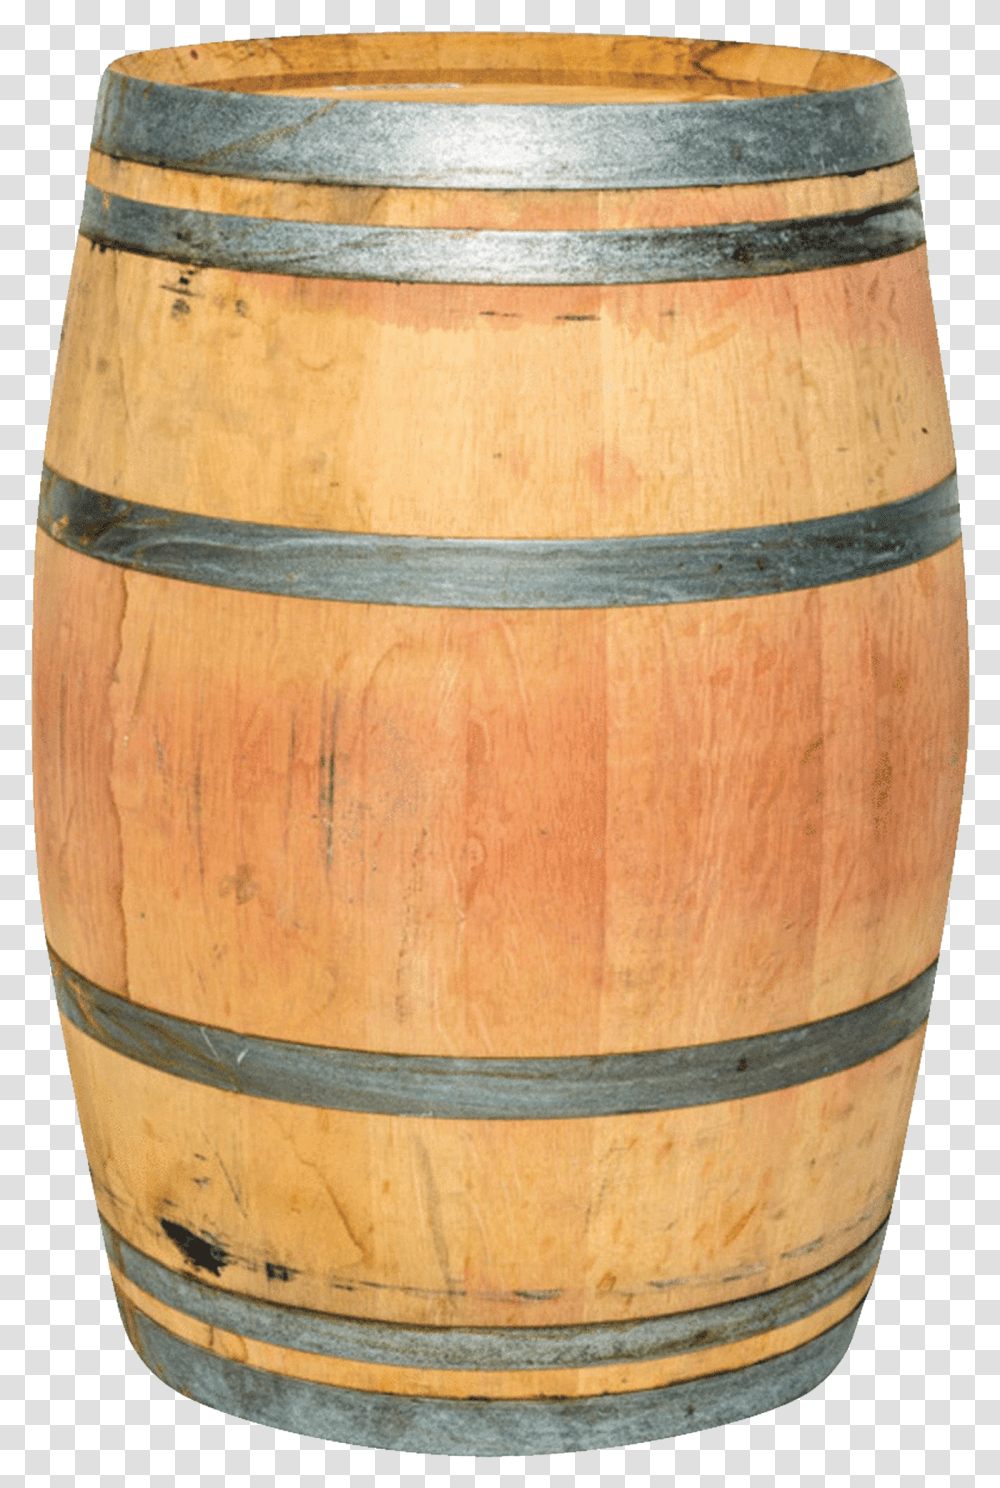 Wooden Keg Image Download Wine Barrel Transparent Png